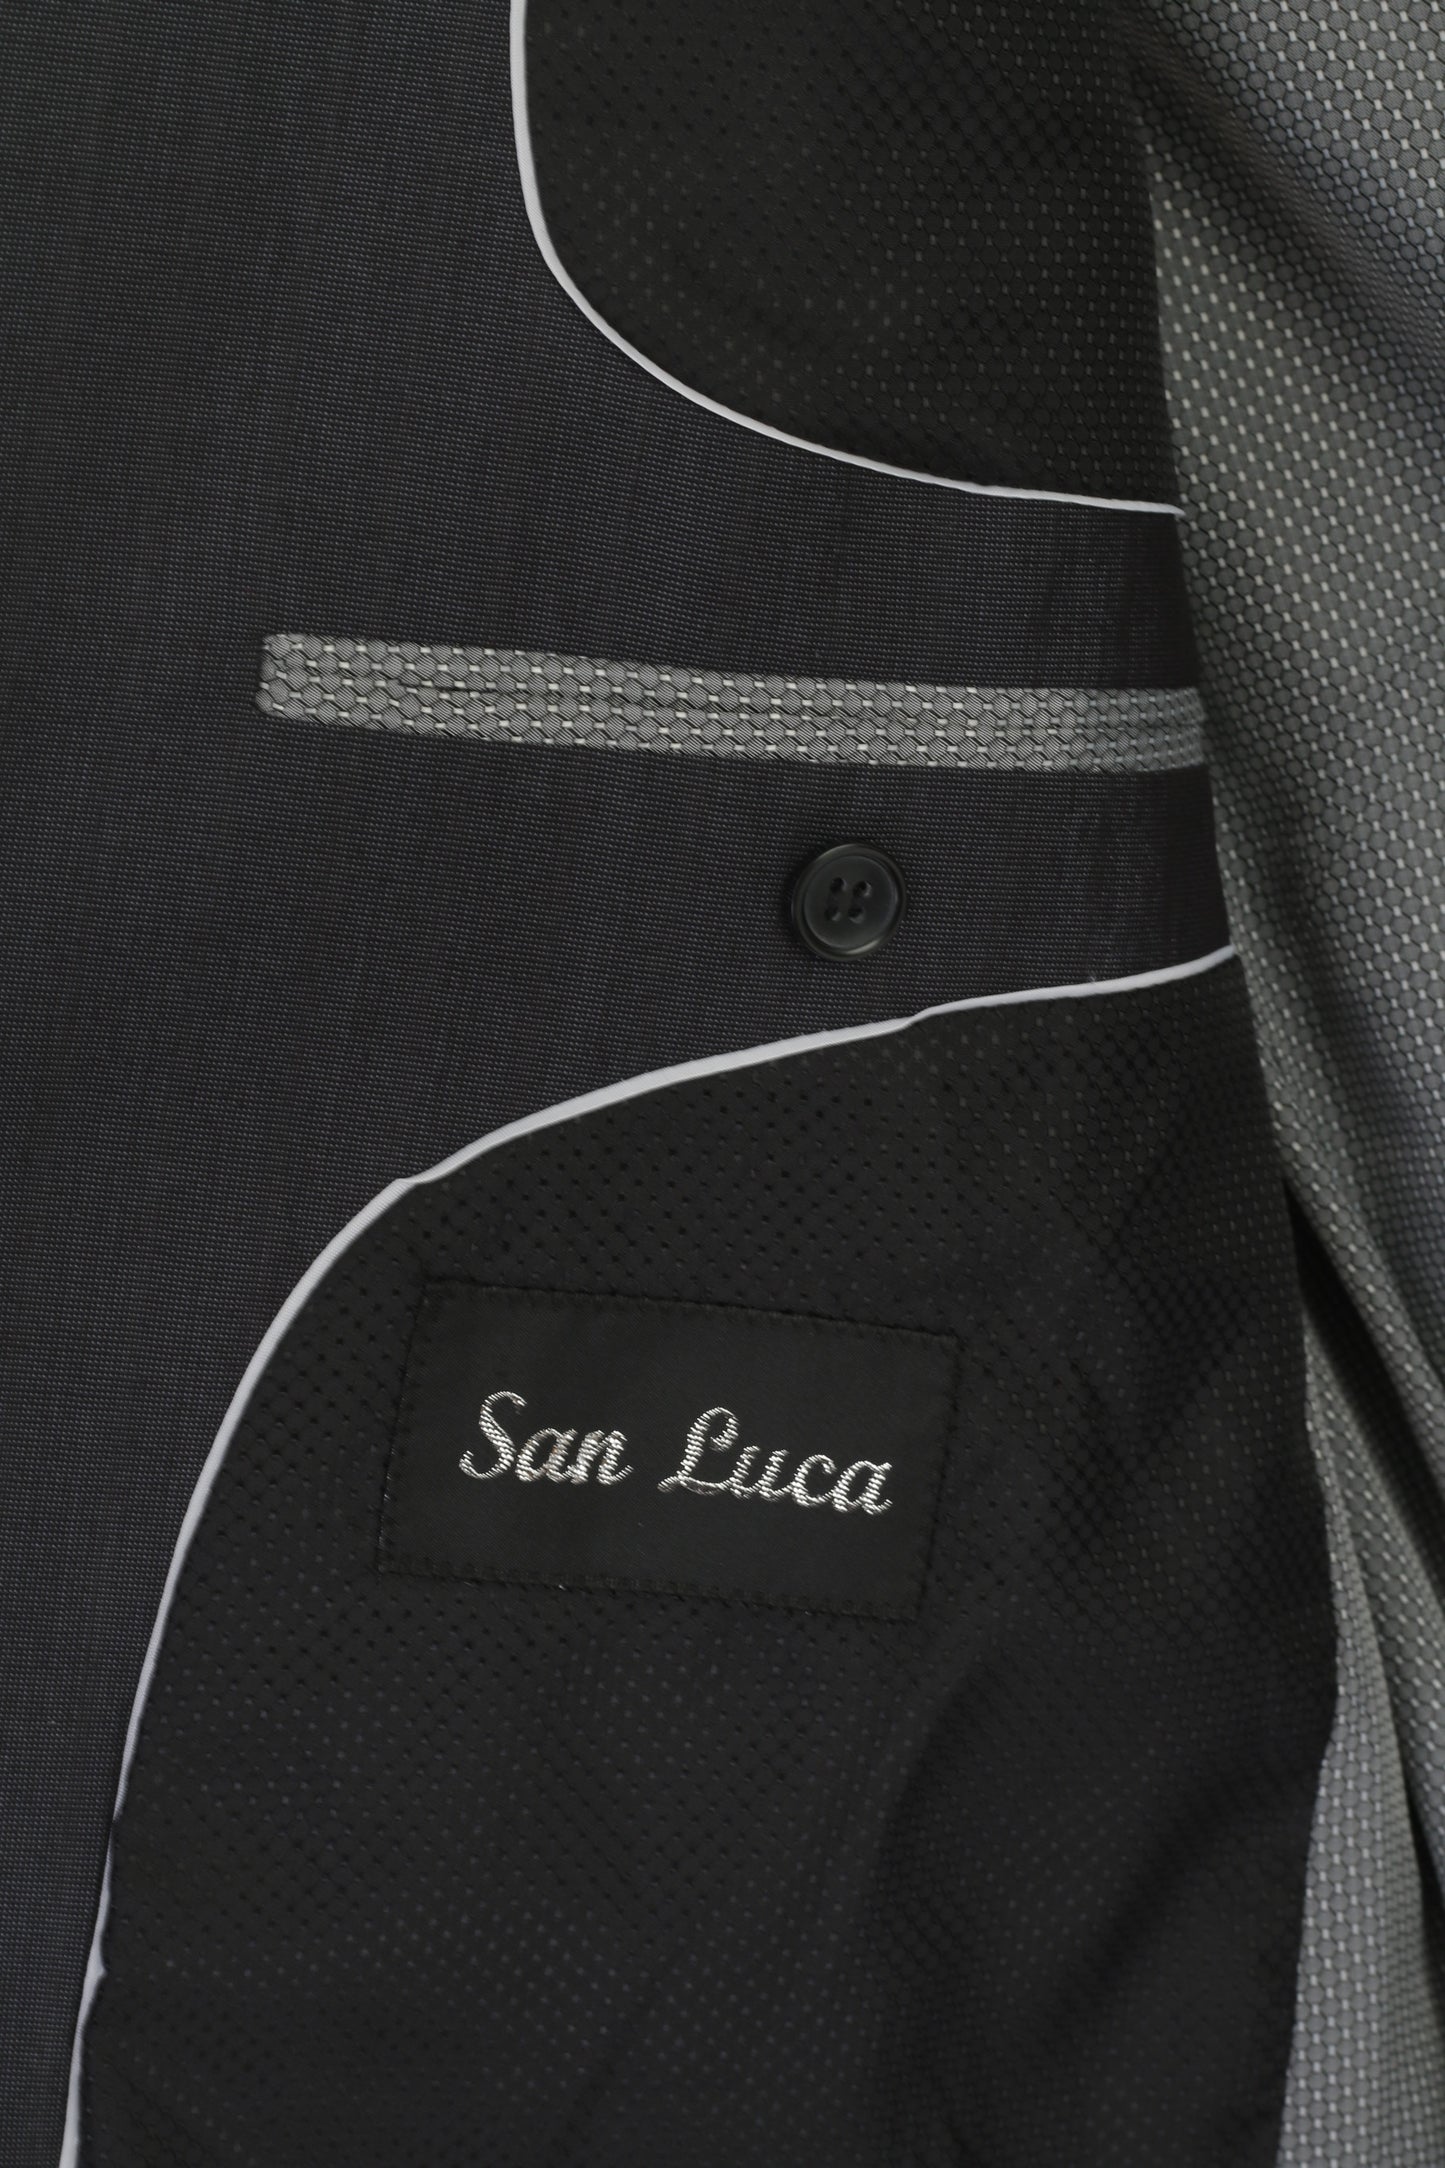 San Luca Hommes 54 44 Blazer Charbon Simple Boutonnage Brillant Vintage Épaulettes Veste